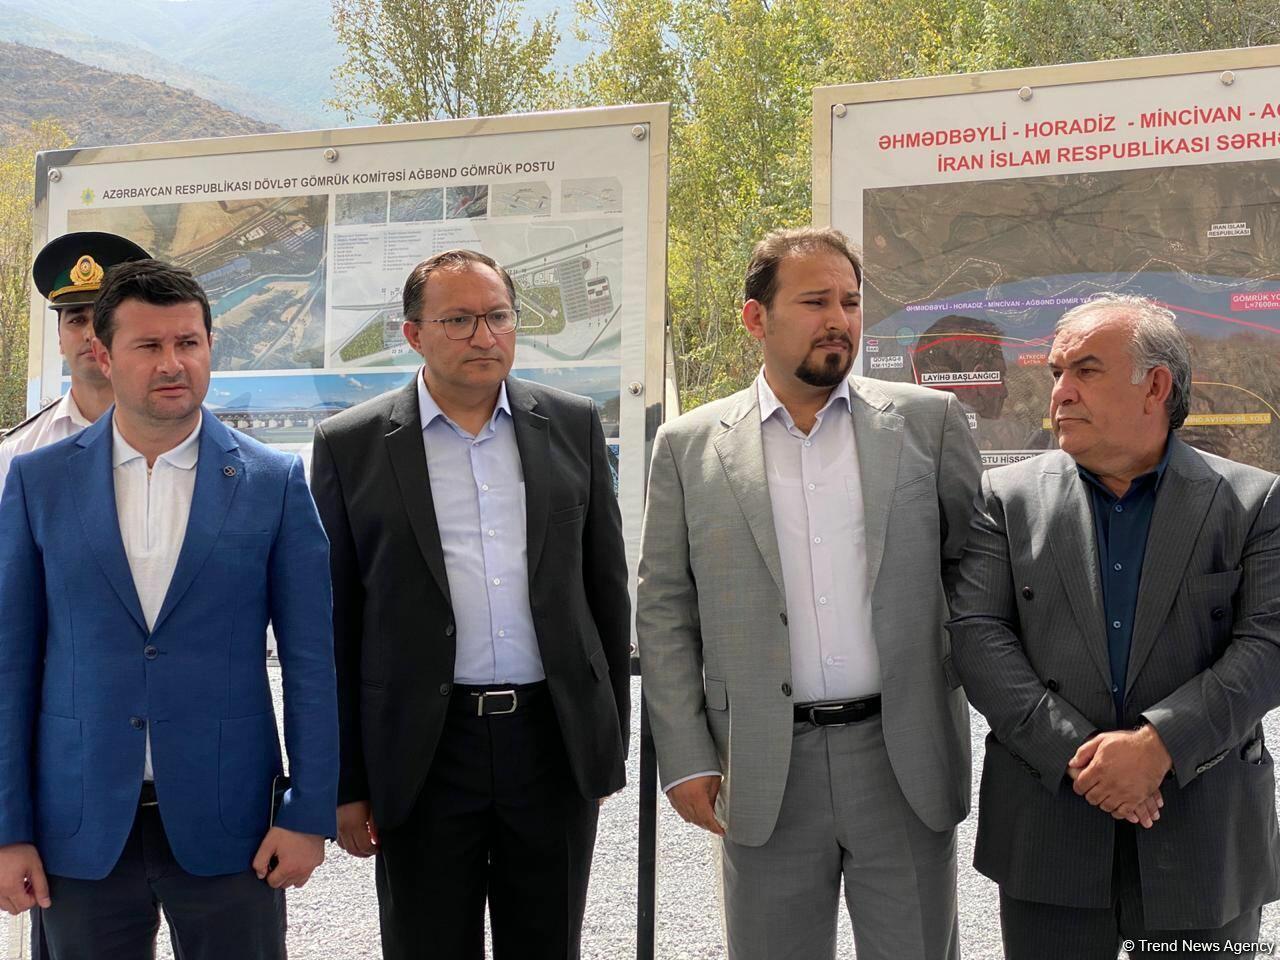 В Восточно-Зангезурском экономическом районе состоялась церемония закладки фундамента автомоста на границе с Ираном